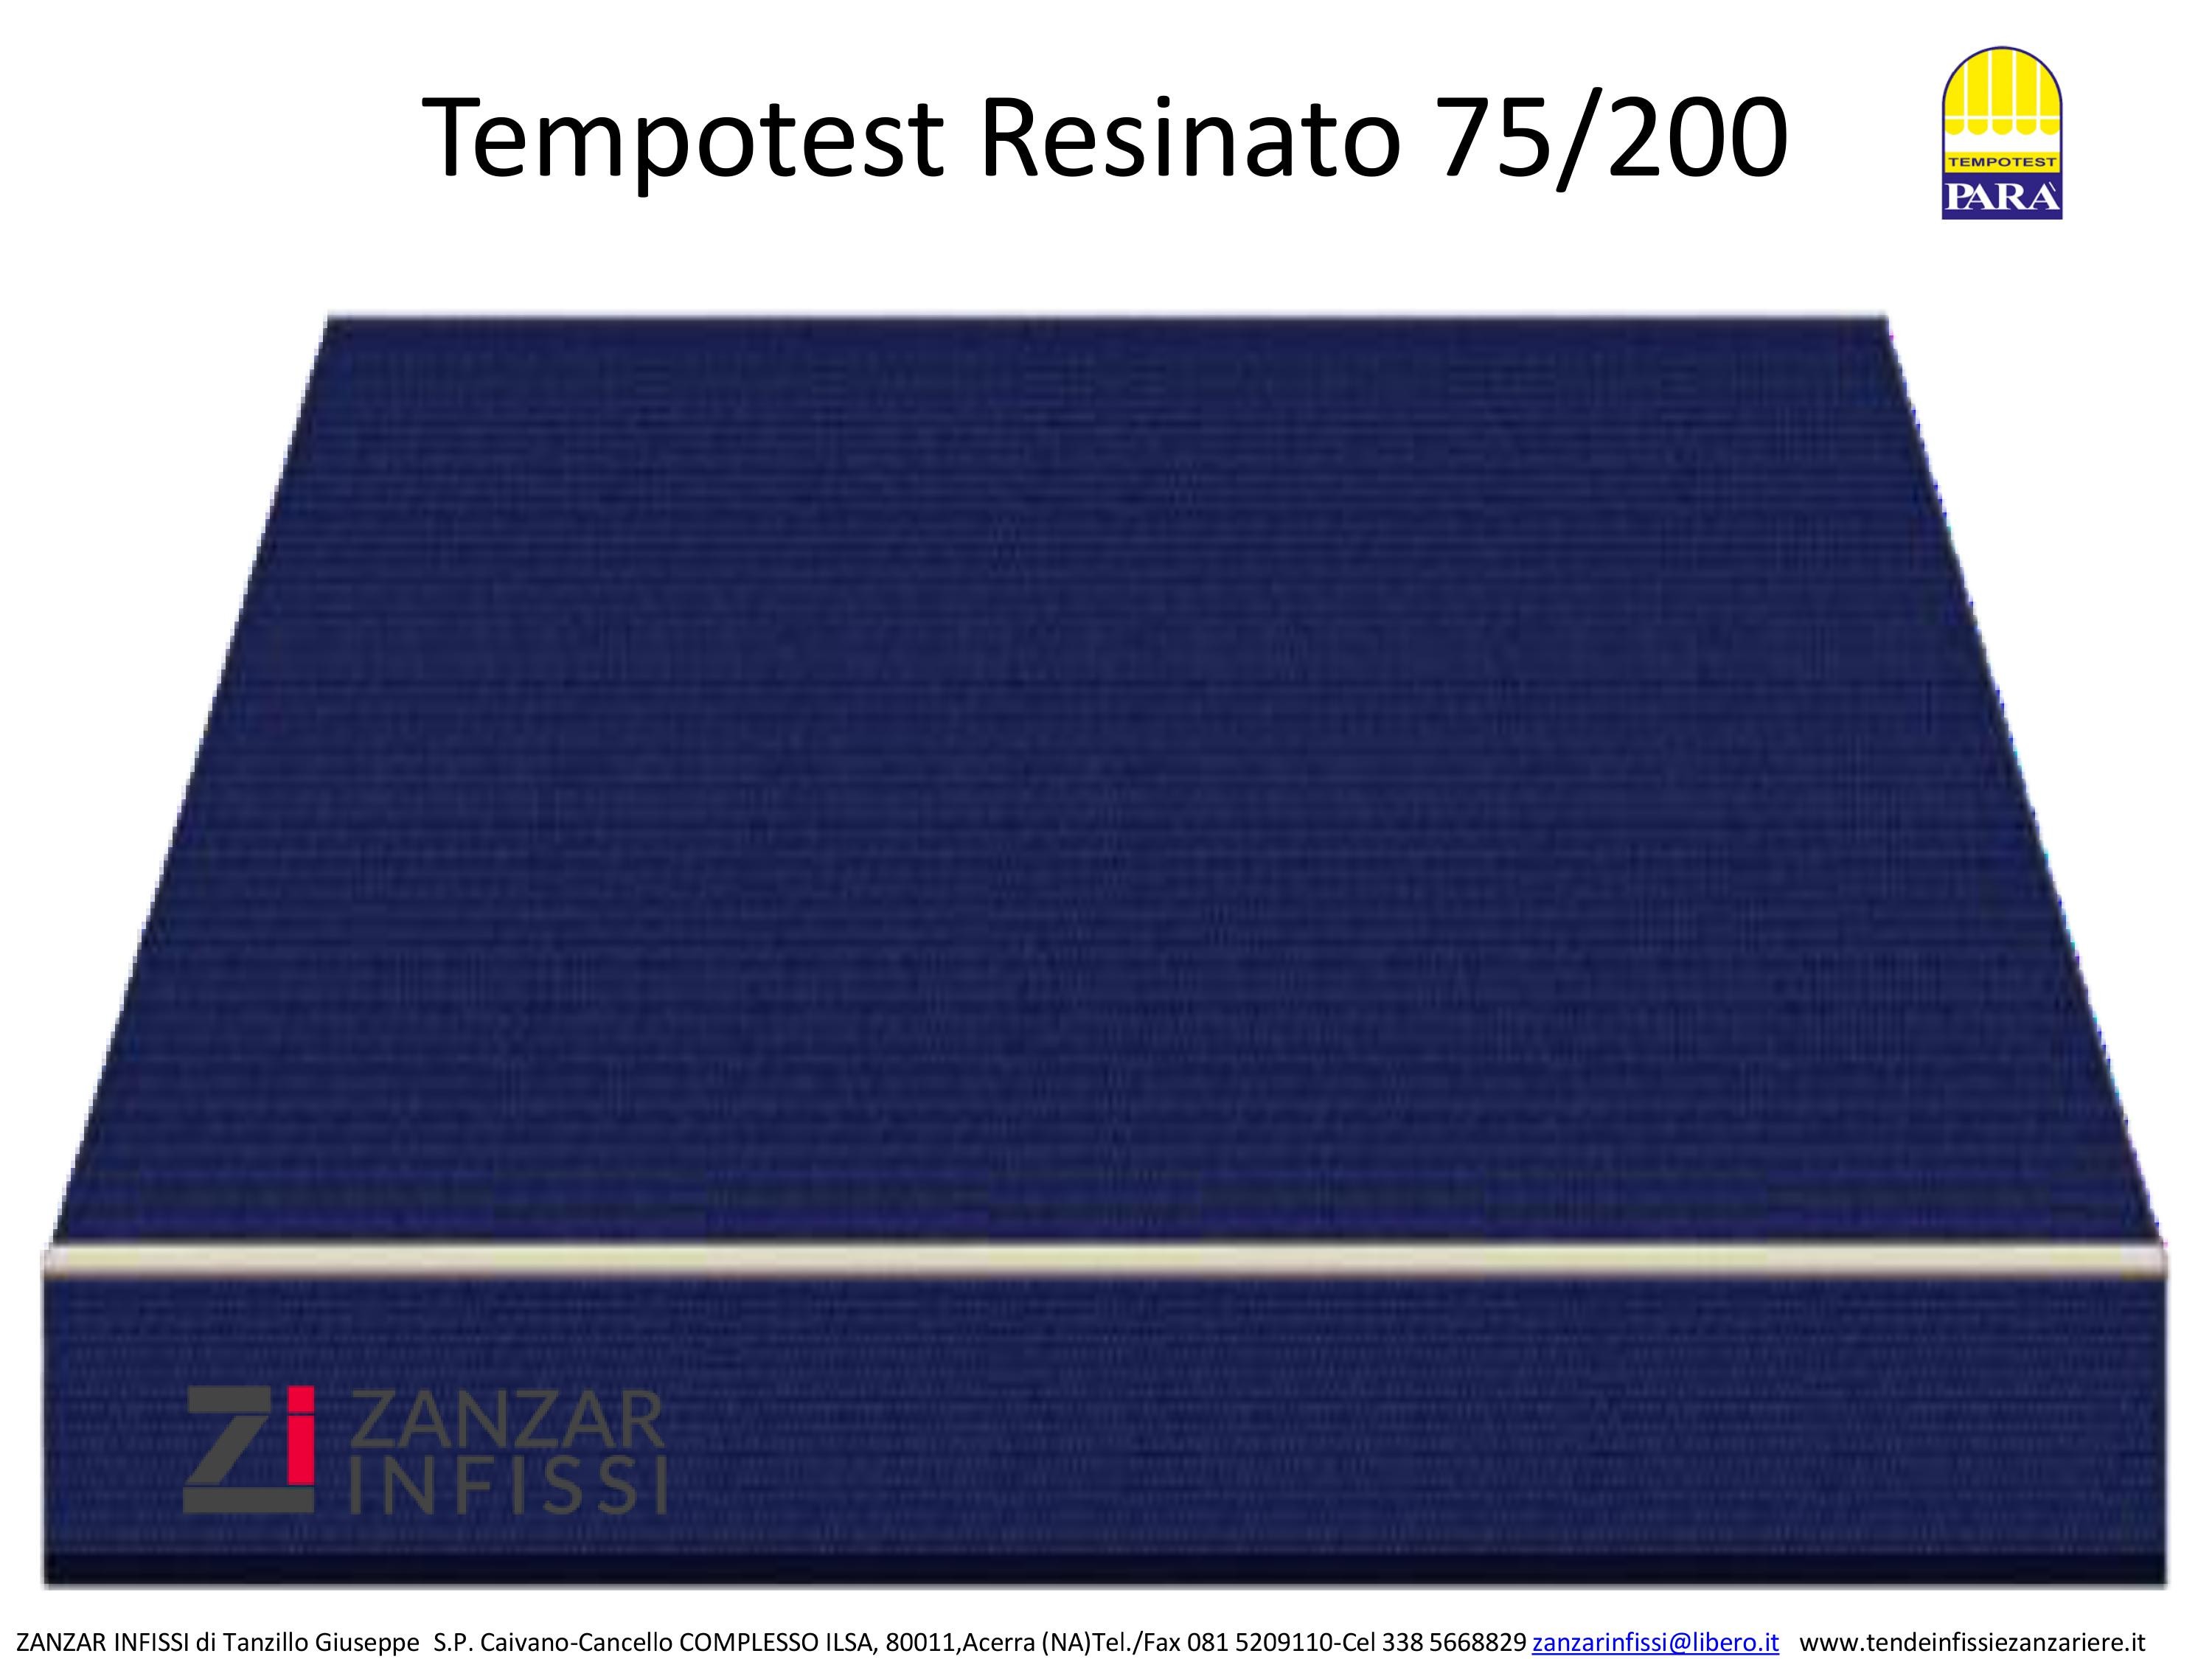 Tempotest resinato 75/200